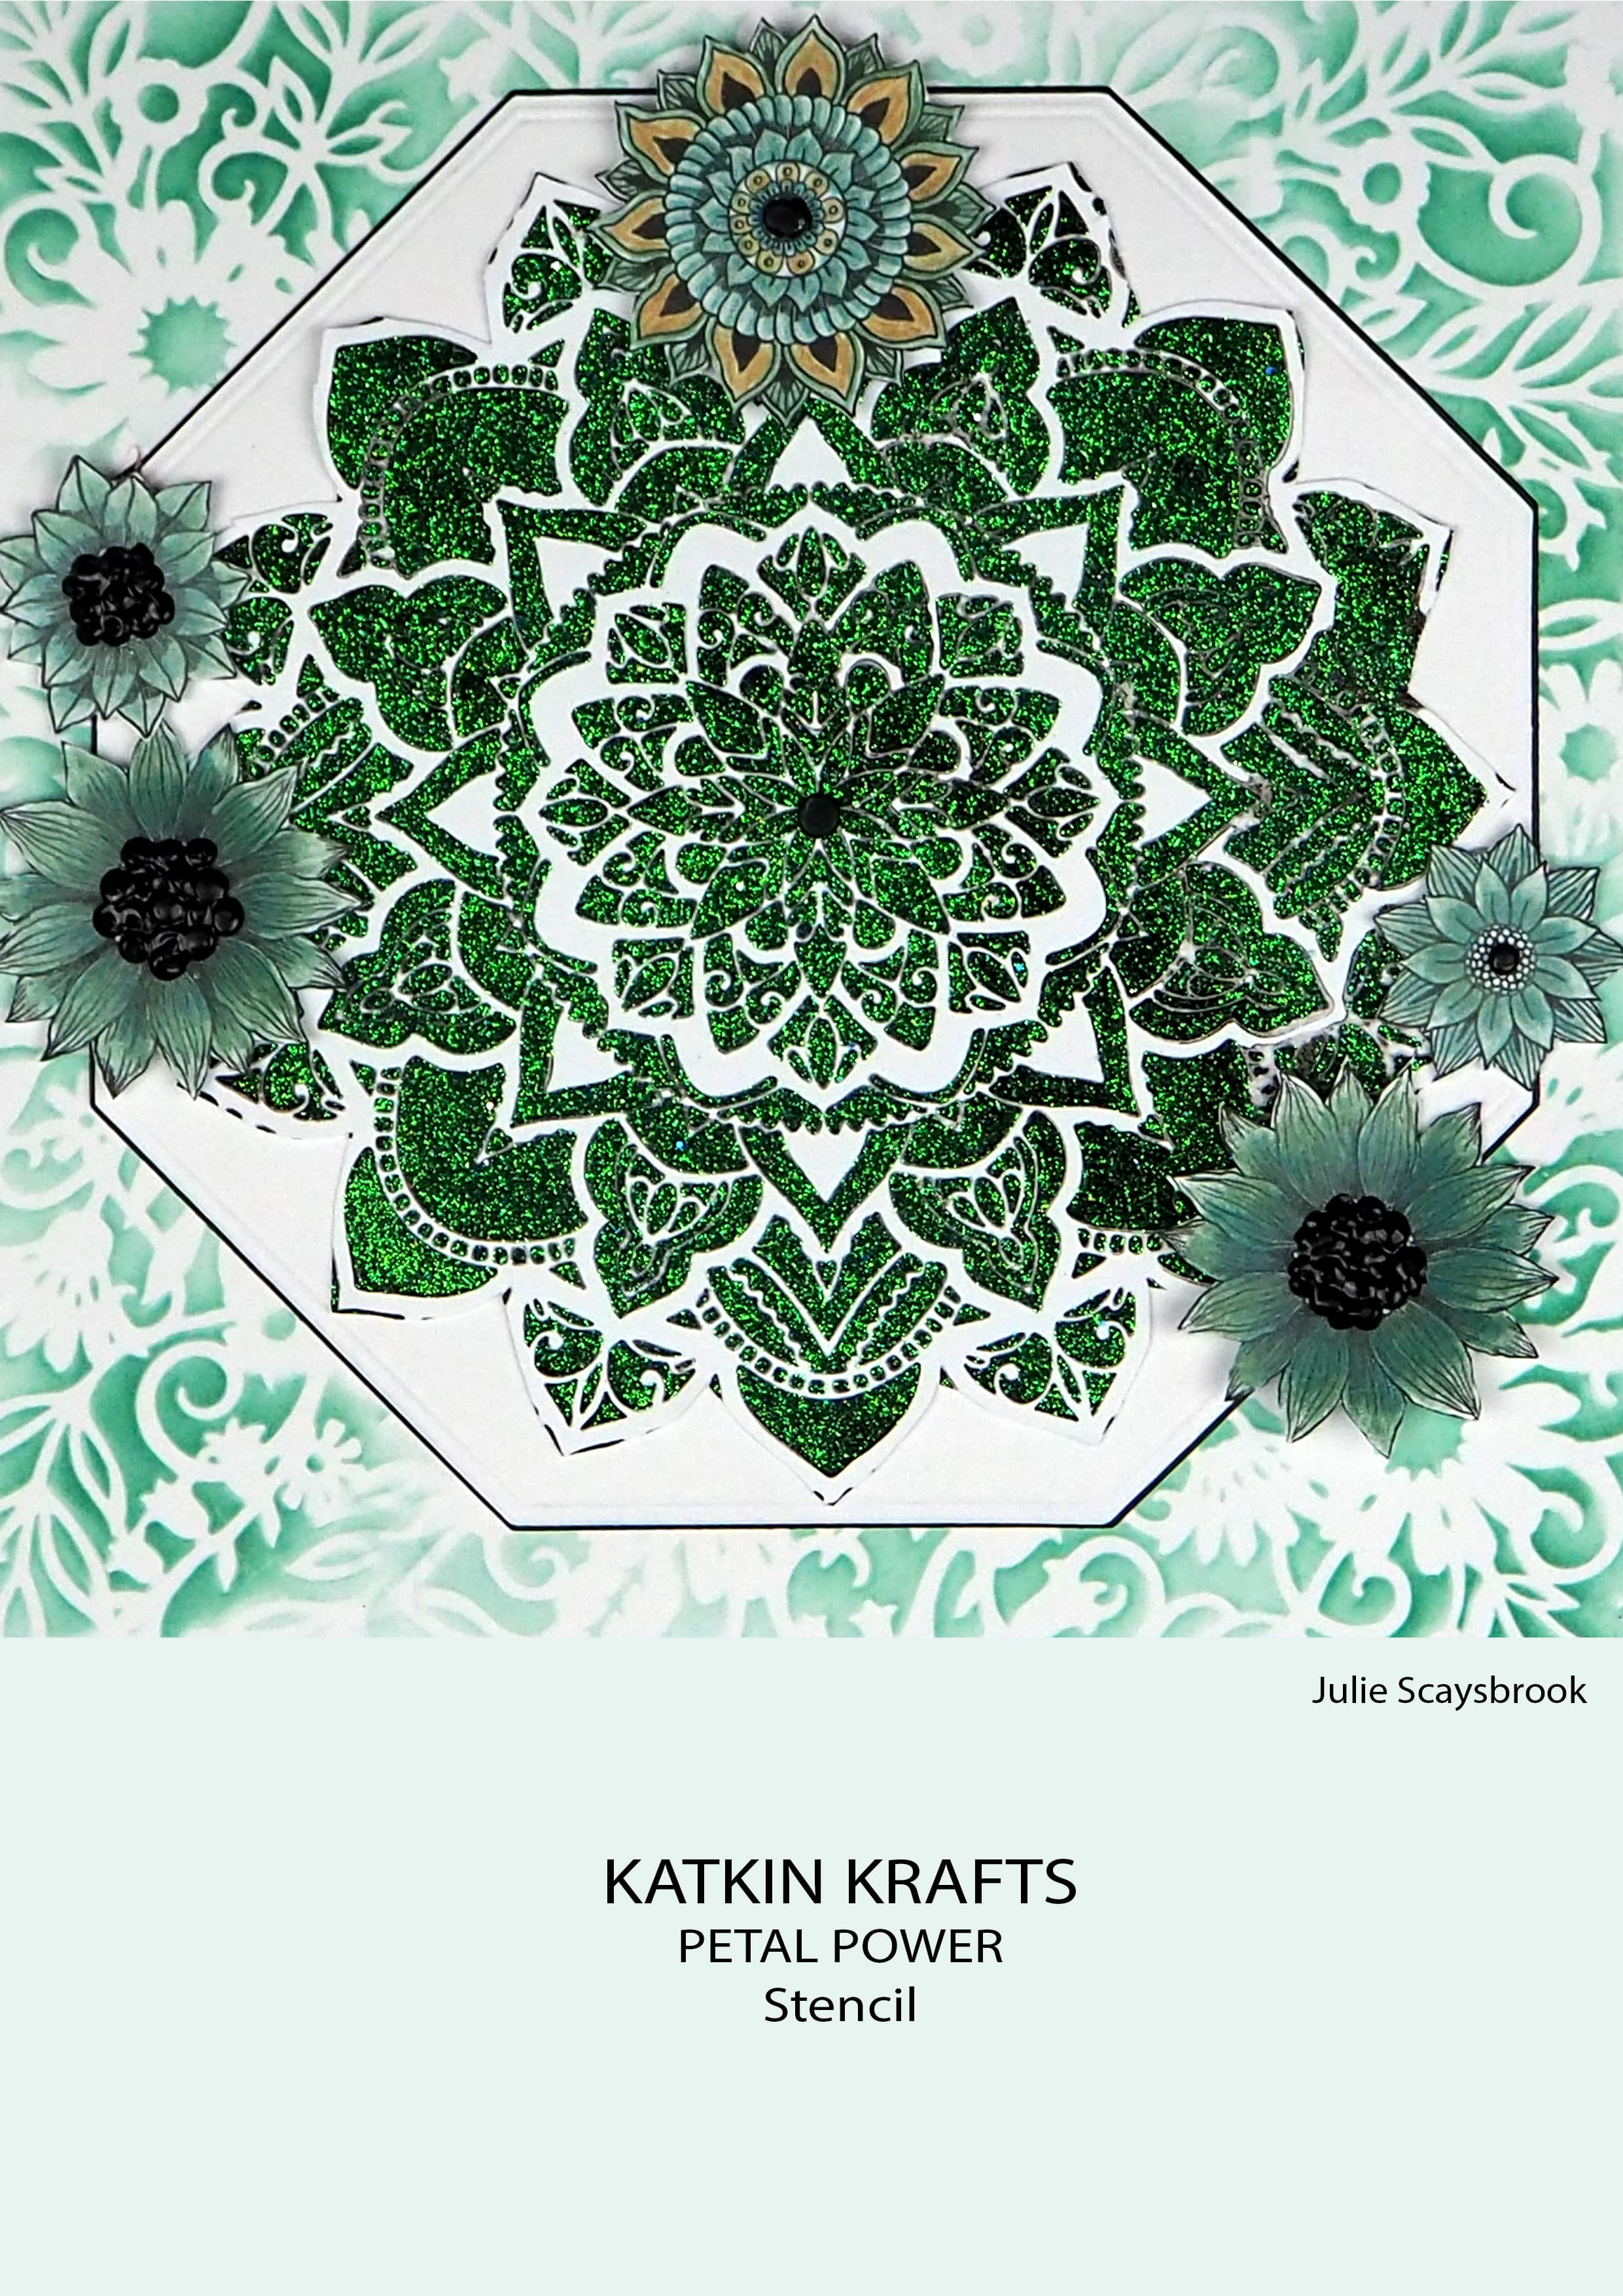 Katkin Krafts Petal Power 7 in x 7 in Stencil